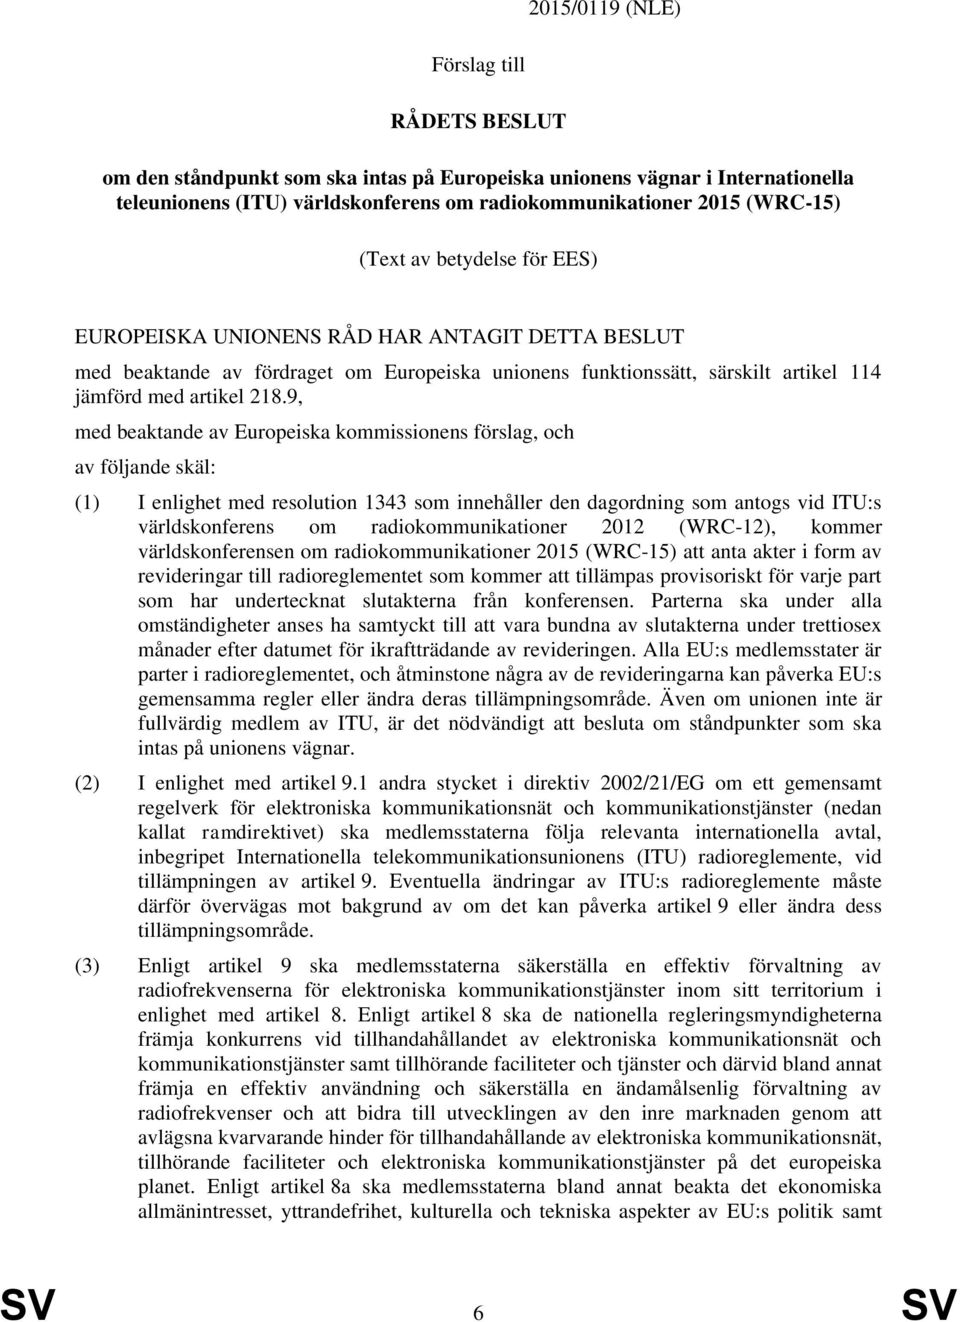 9, med beaktande av Europeiska kommissionens förslag, och av följande skäl: (1) I enlighet med resolution 1343 som innehåller den dagordning som antogs vid ITU:s världskonferens om